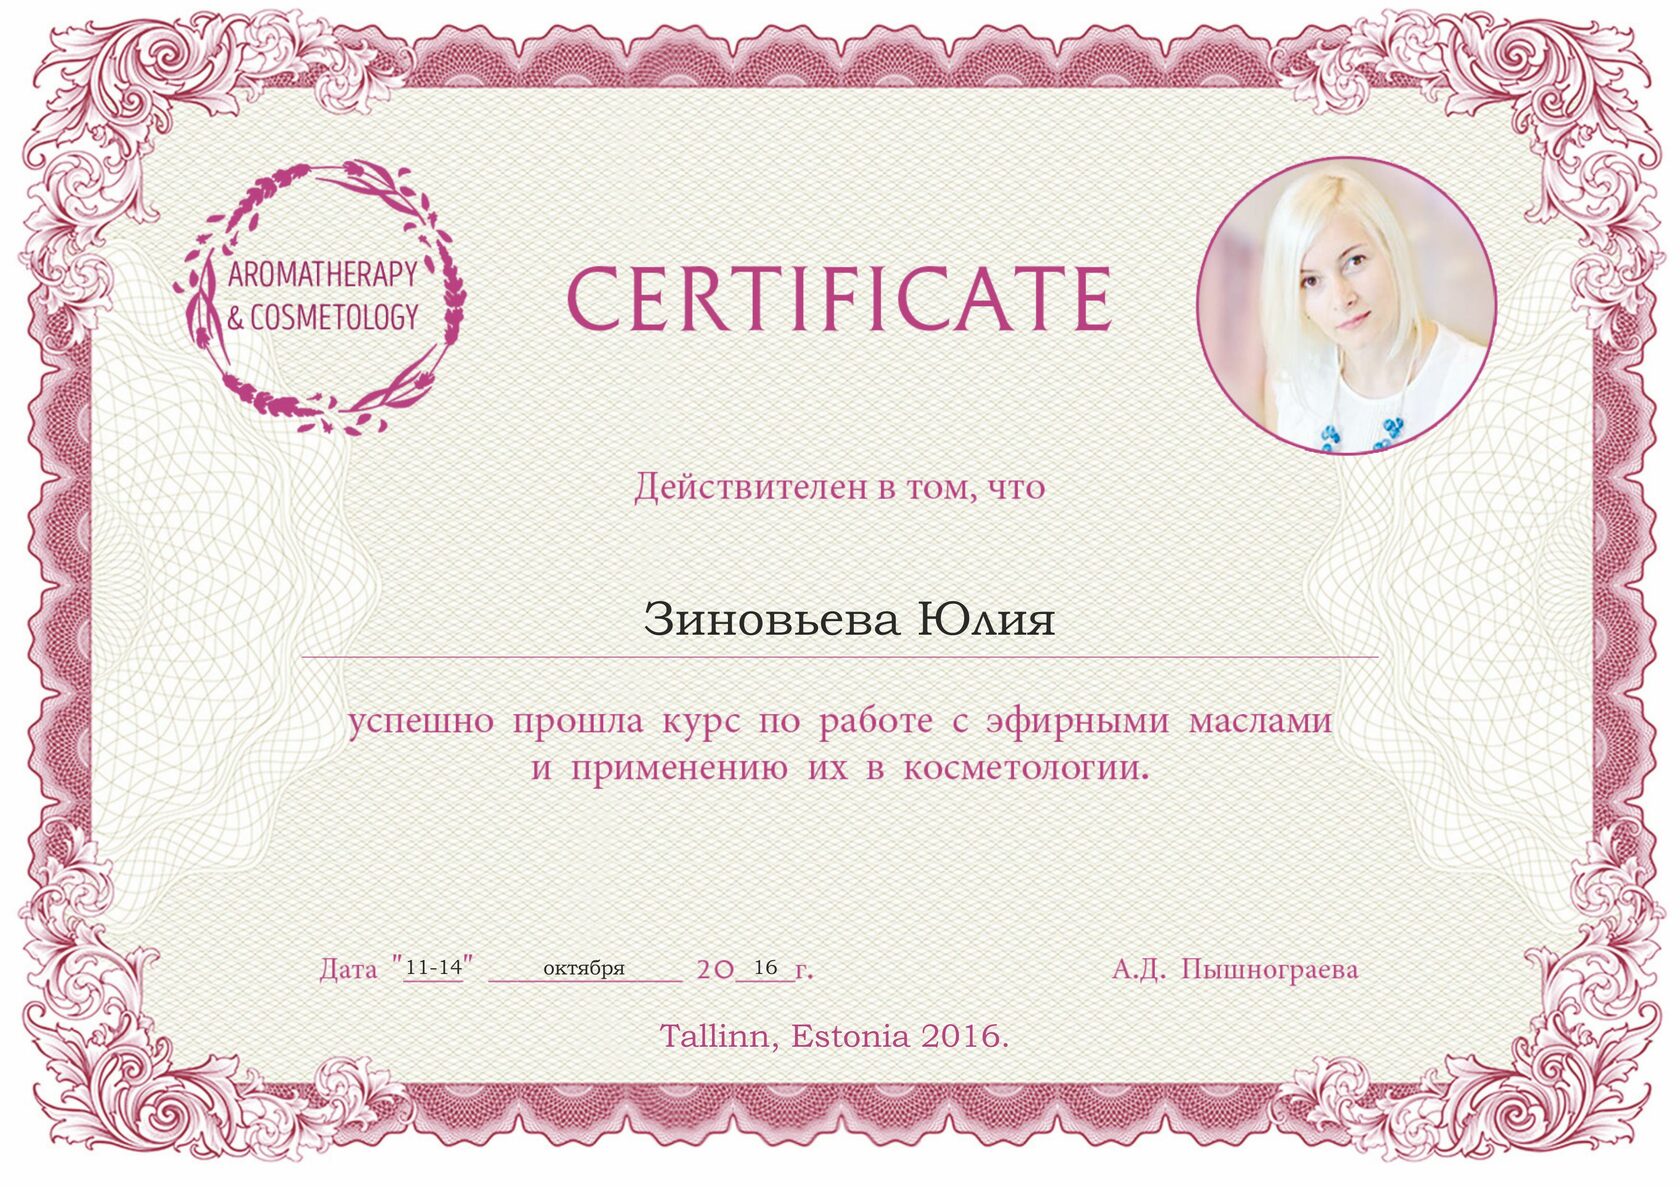 Юлем мастер. Face Master сертификат. "Face Master" - Юлии Зиновьевой.сертификата.